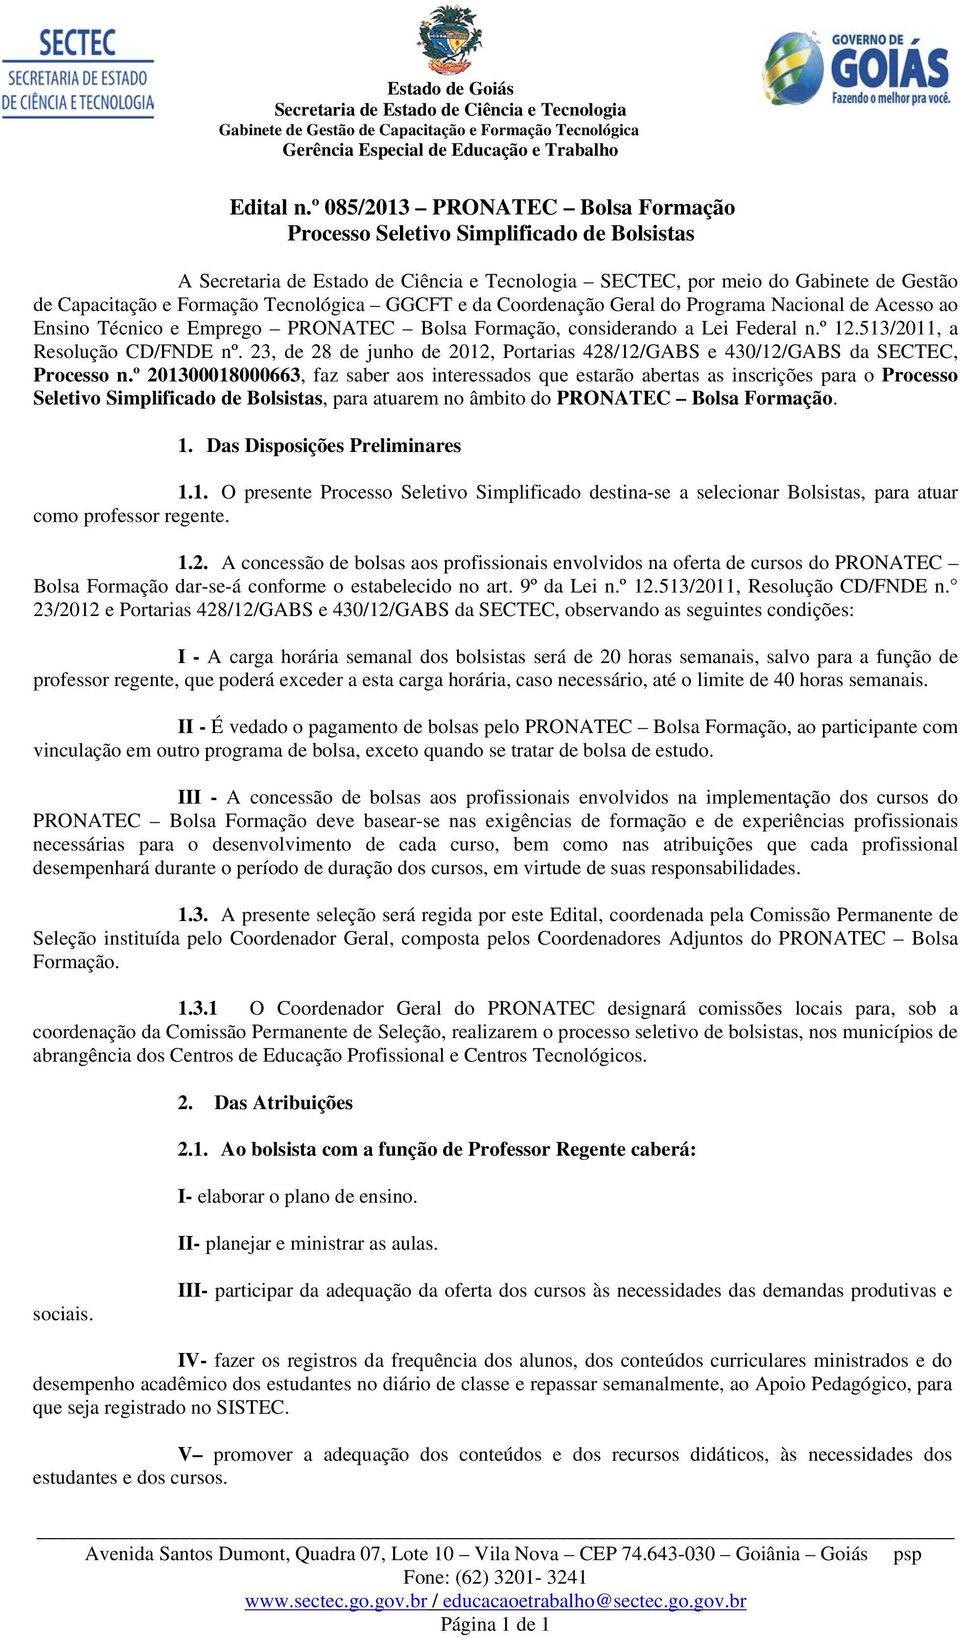 Nacional de Acesso ao Ensino Técnico e Emprego PRONATEC Bolsa Formação, considerando a Lei Federal n.º 12.513/2011, a Resolução CD/FNDE nº.